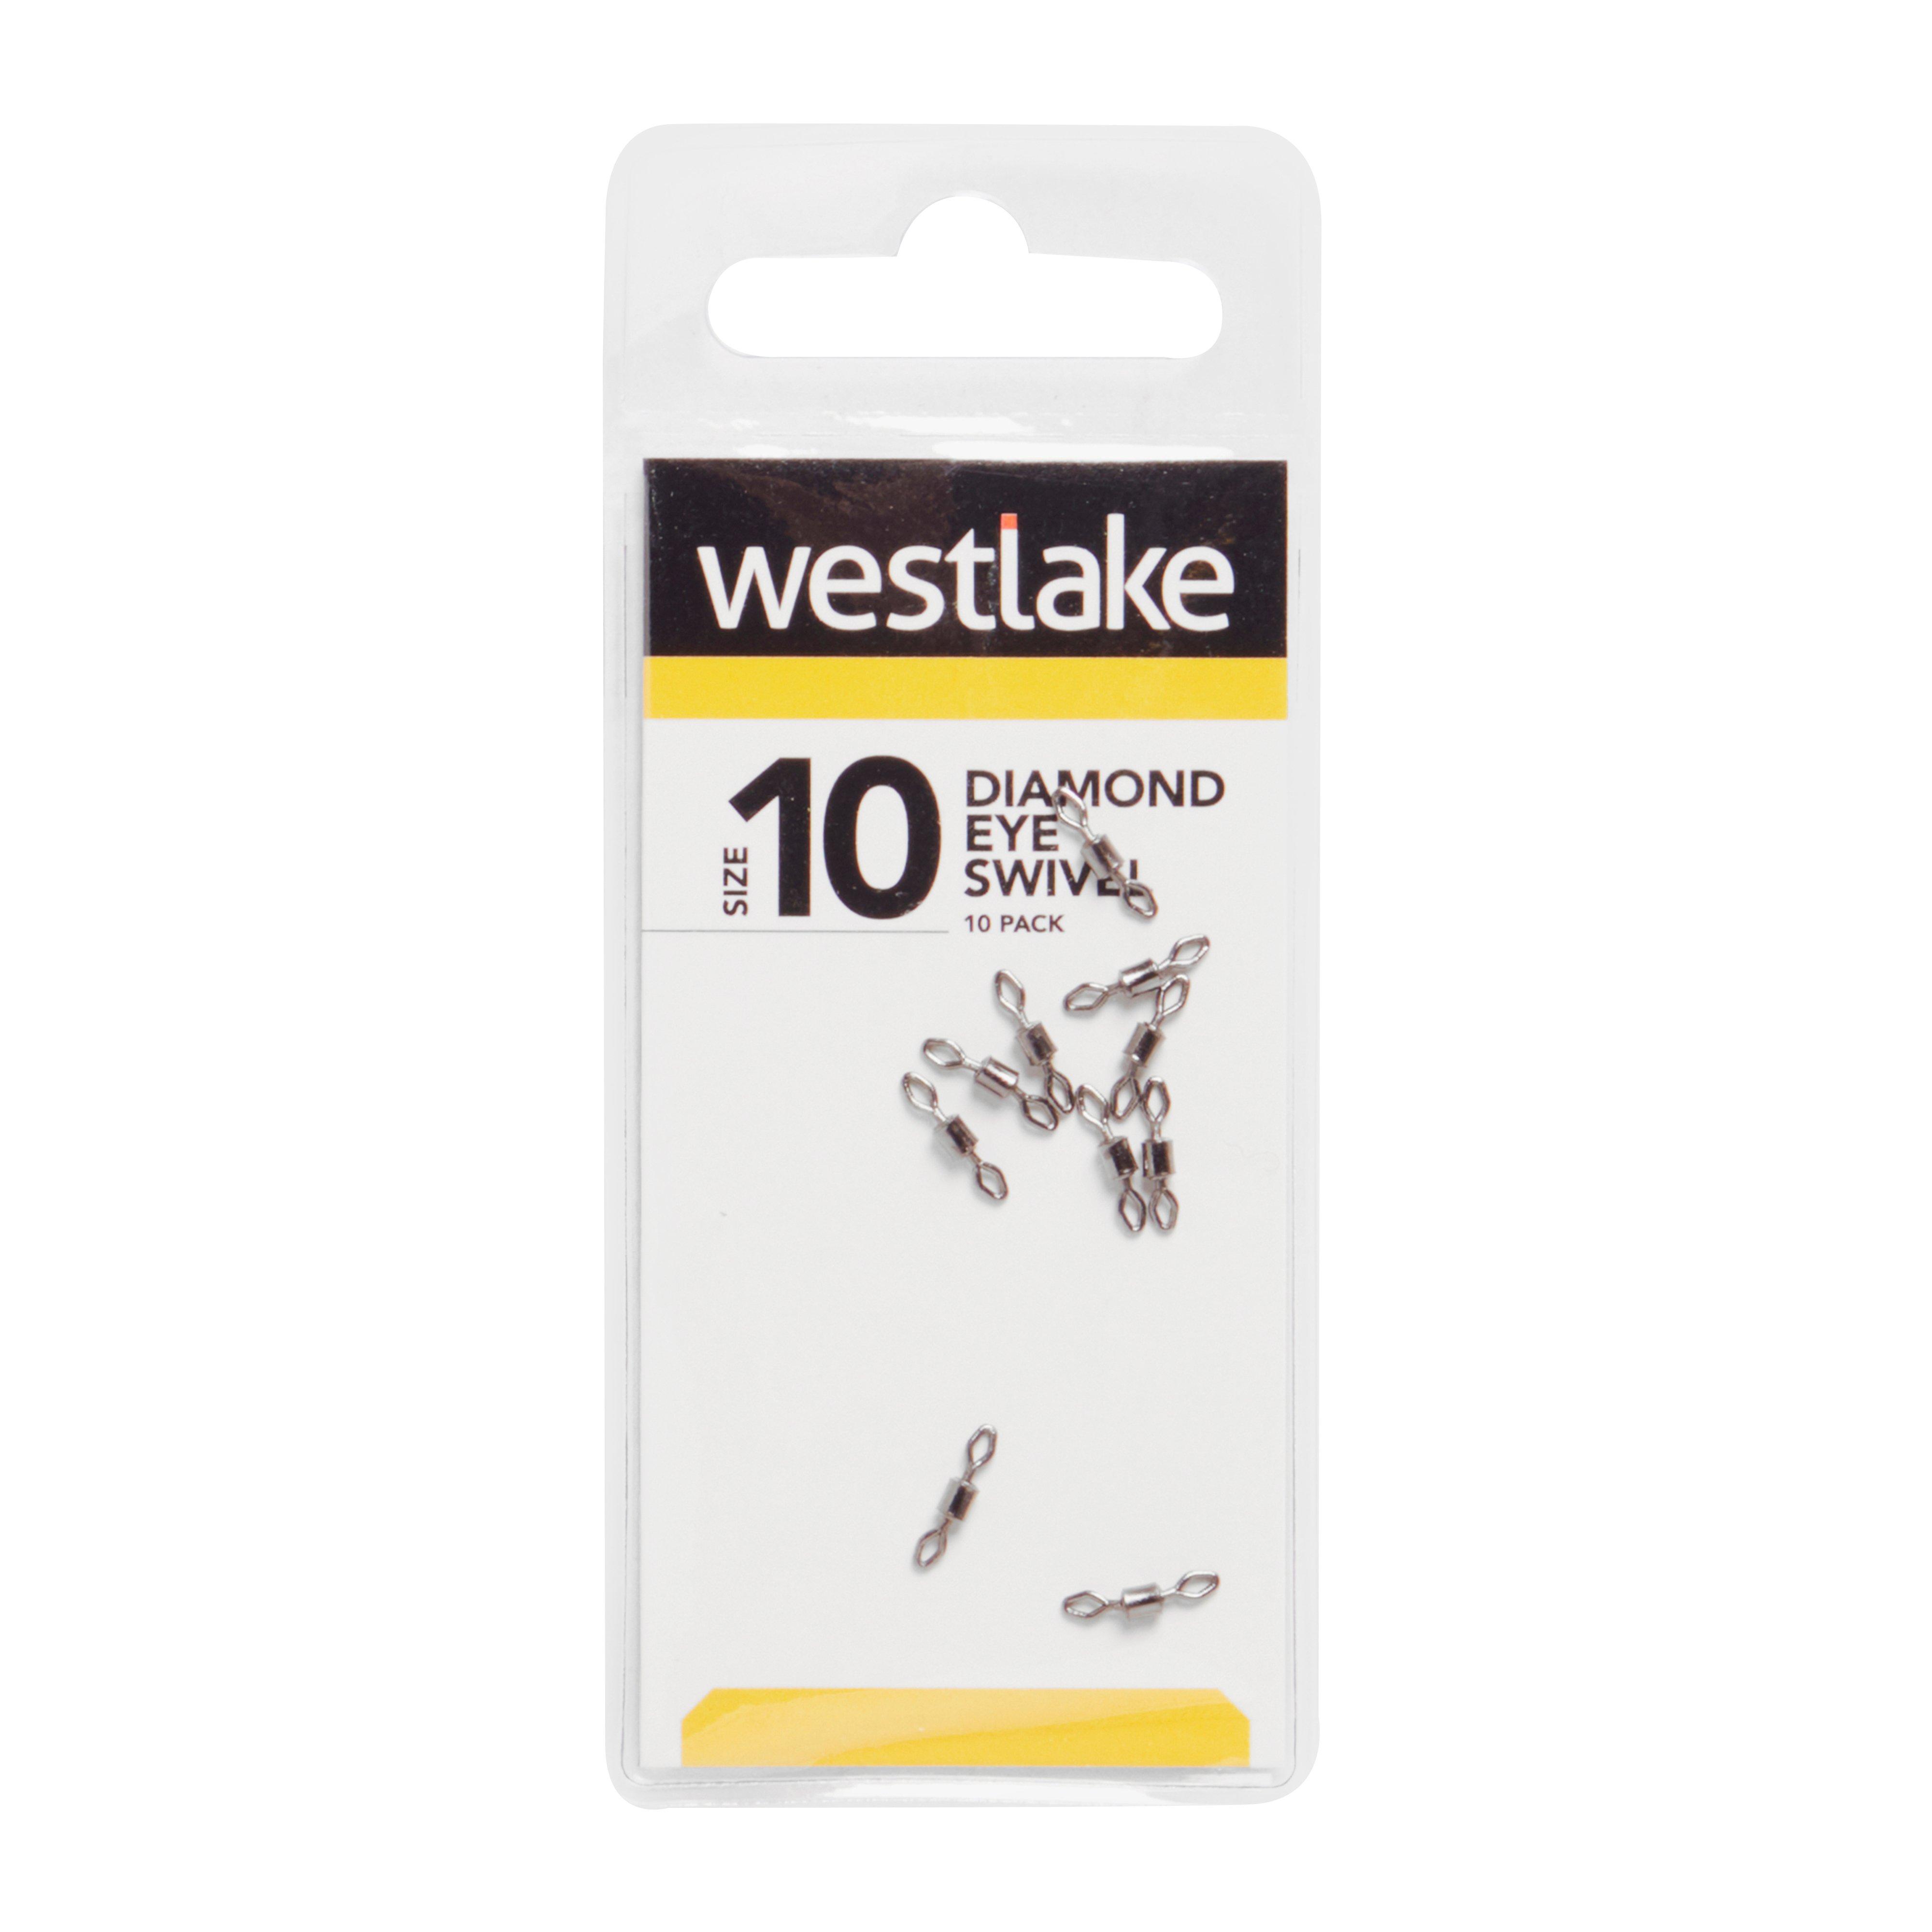 Westlake Diamond Eye Swivel Size 10 Review